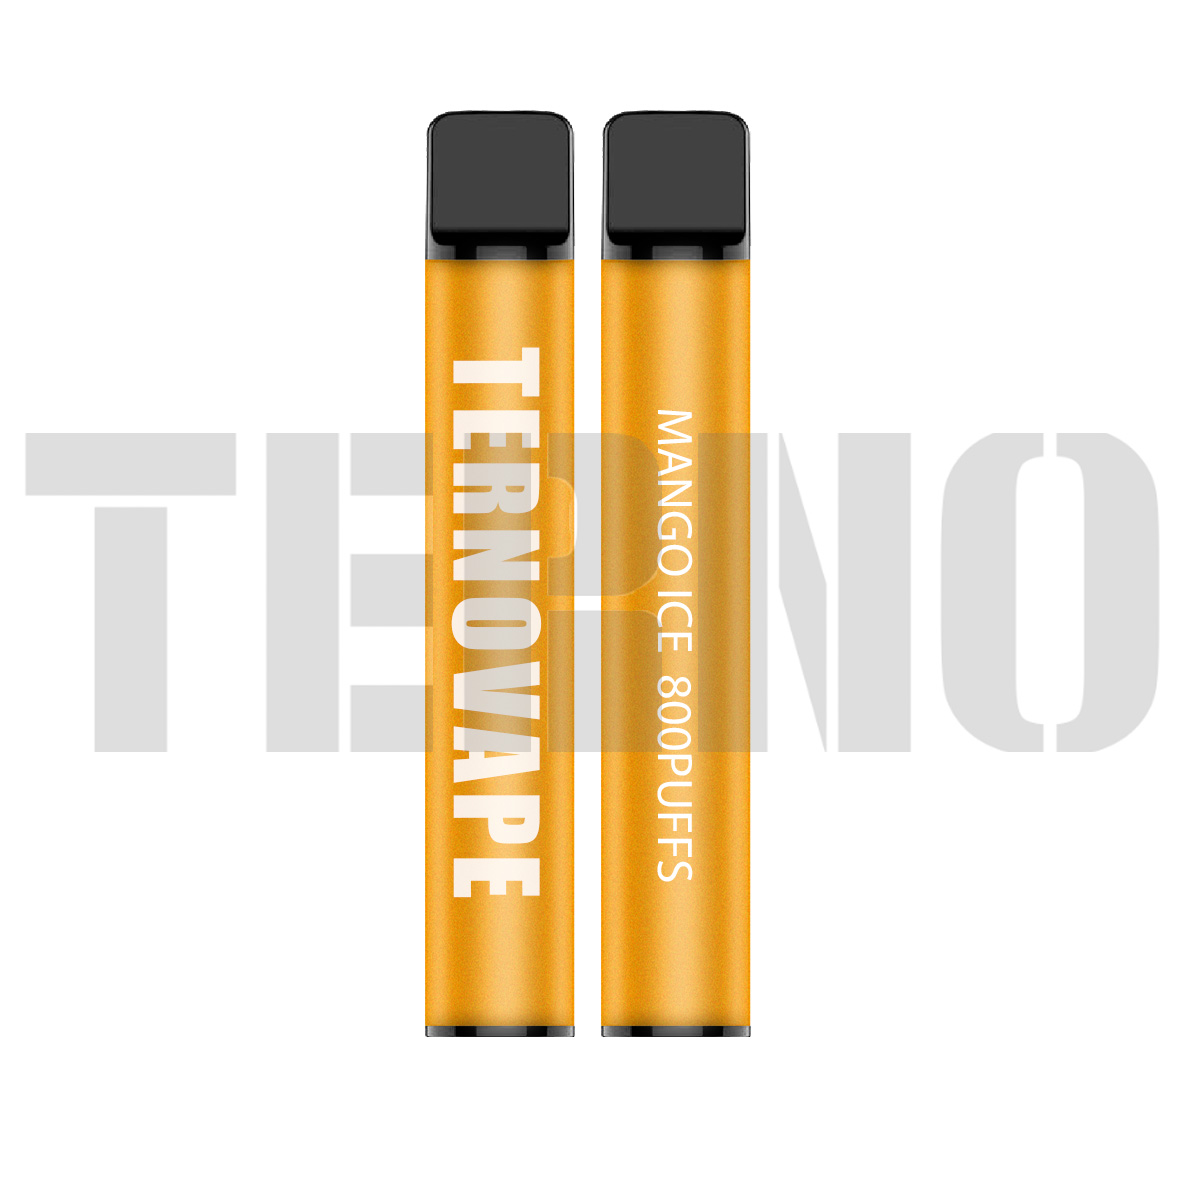 Terno YT800 disposable vape kit 800puffs - 4